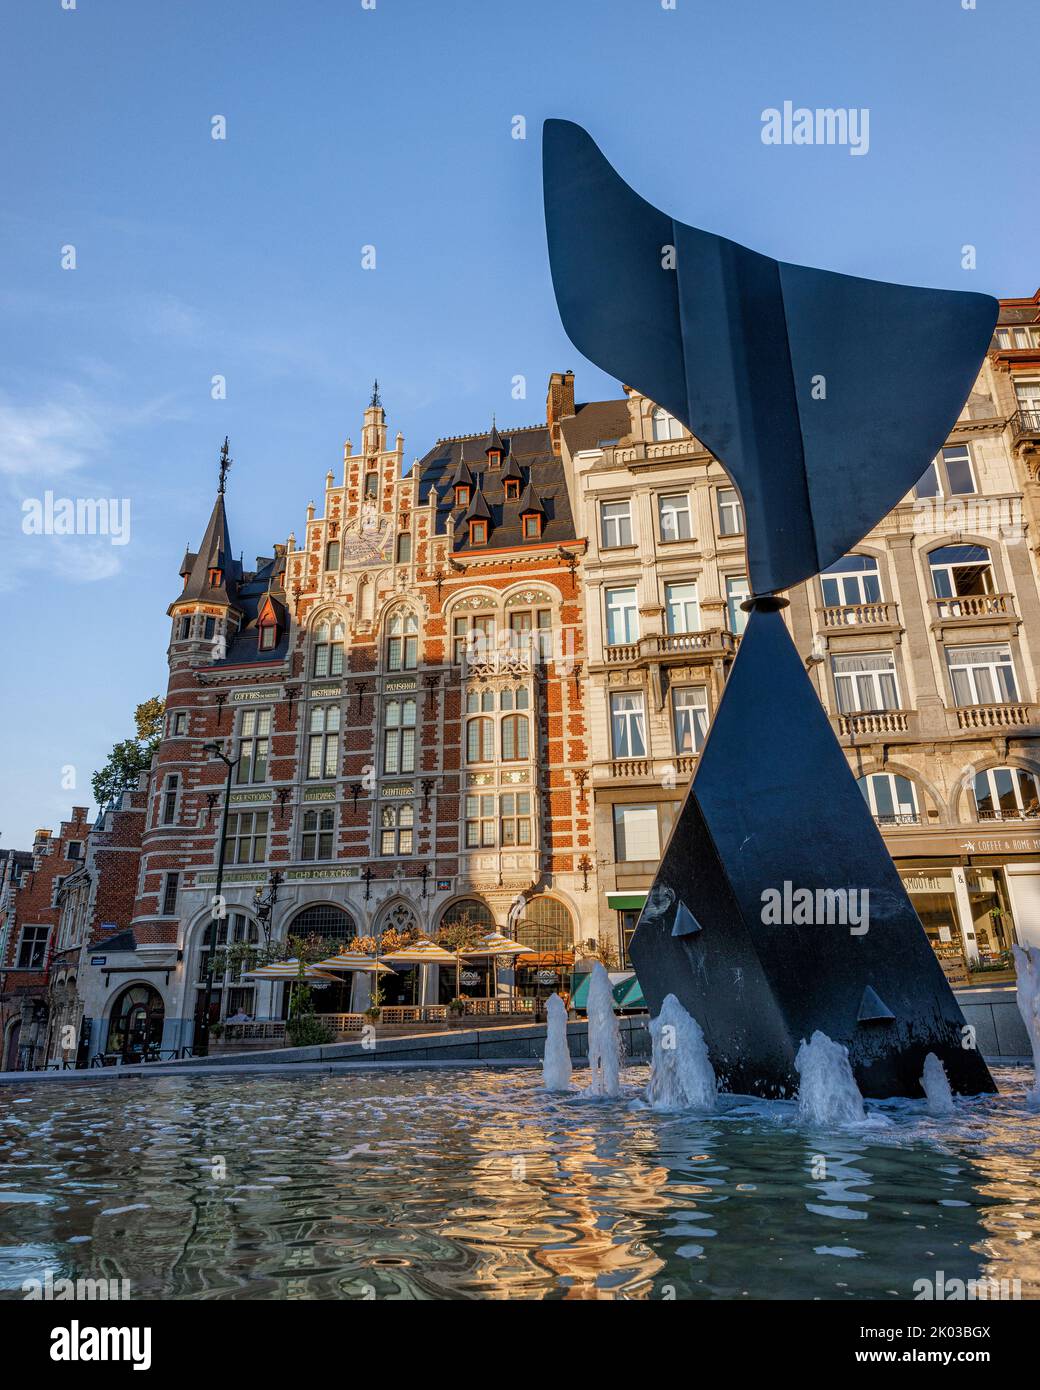 Bâtiments historiques sur Coudenberg, avec fontaine en premier plan. Bruxelles, Belgique. Banque D'Images